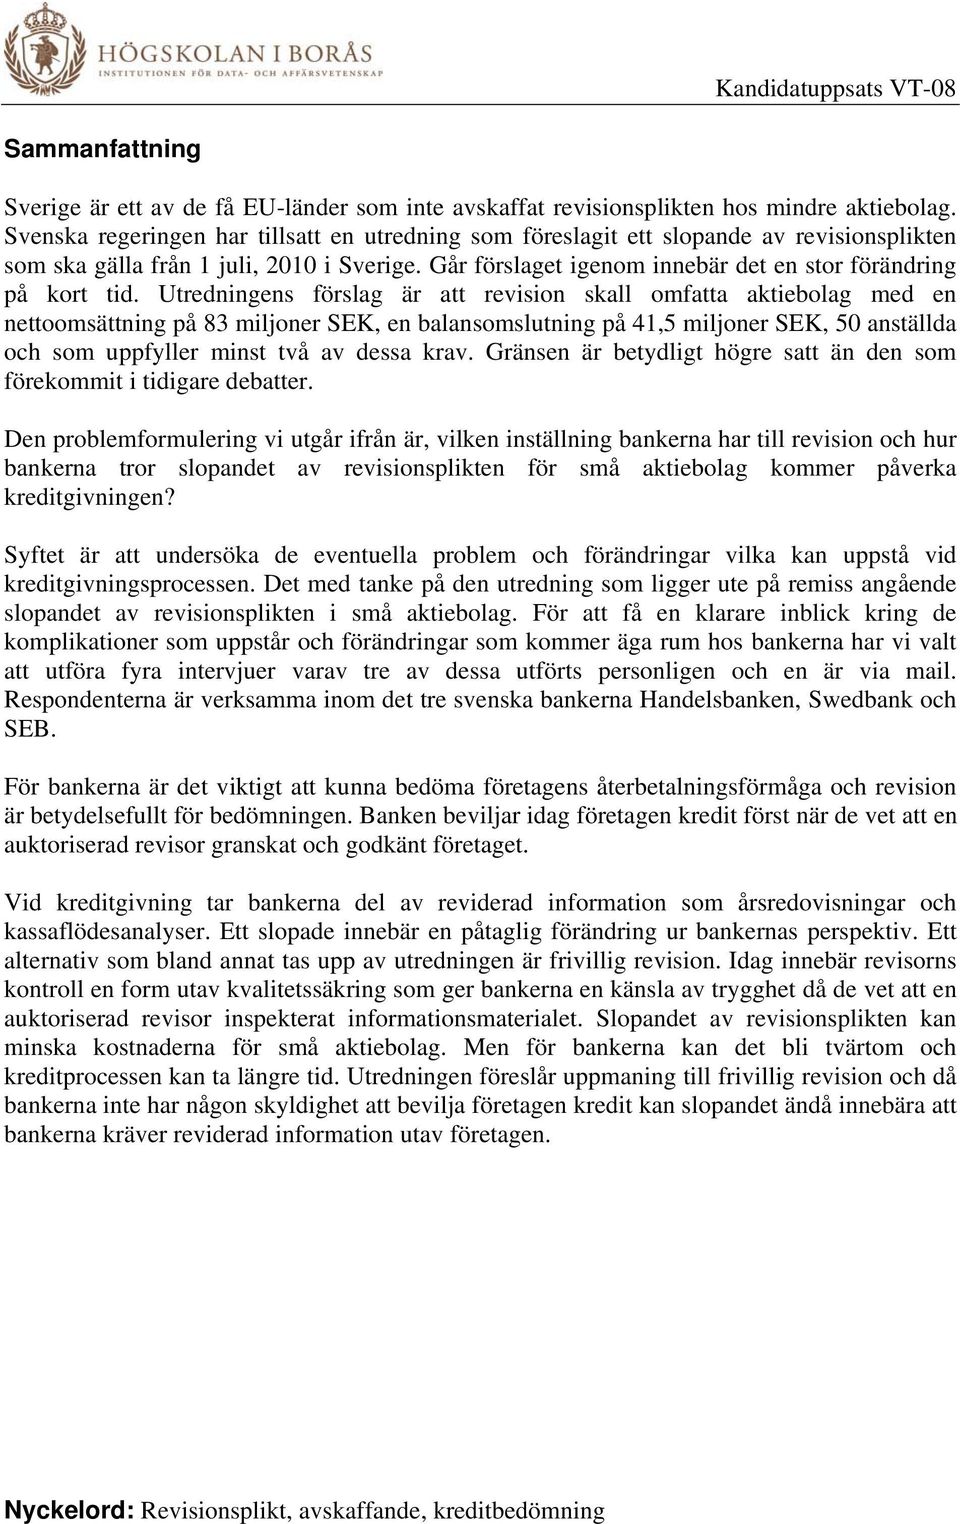 Utredningens förslag är att revision skall omfatta aktiebolag med en nettoomsättning på 83 miljoner SEK, en balansomslutning på 41,5 miljoner SEK, 50 anställda och som uppfyller minst två av dessa